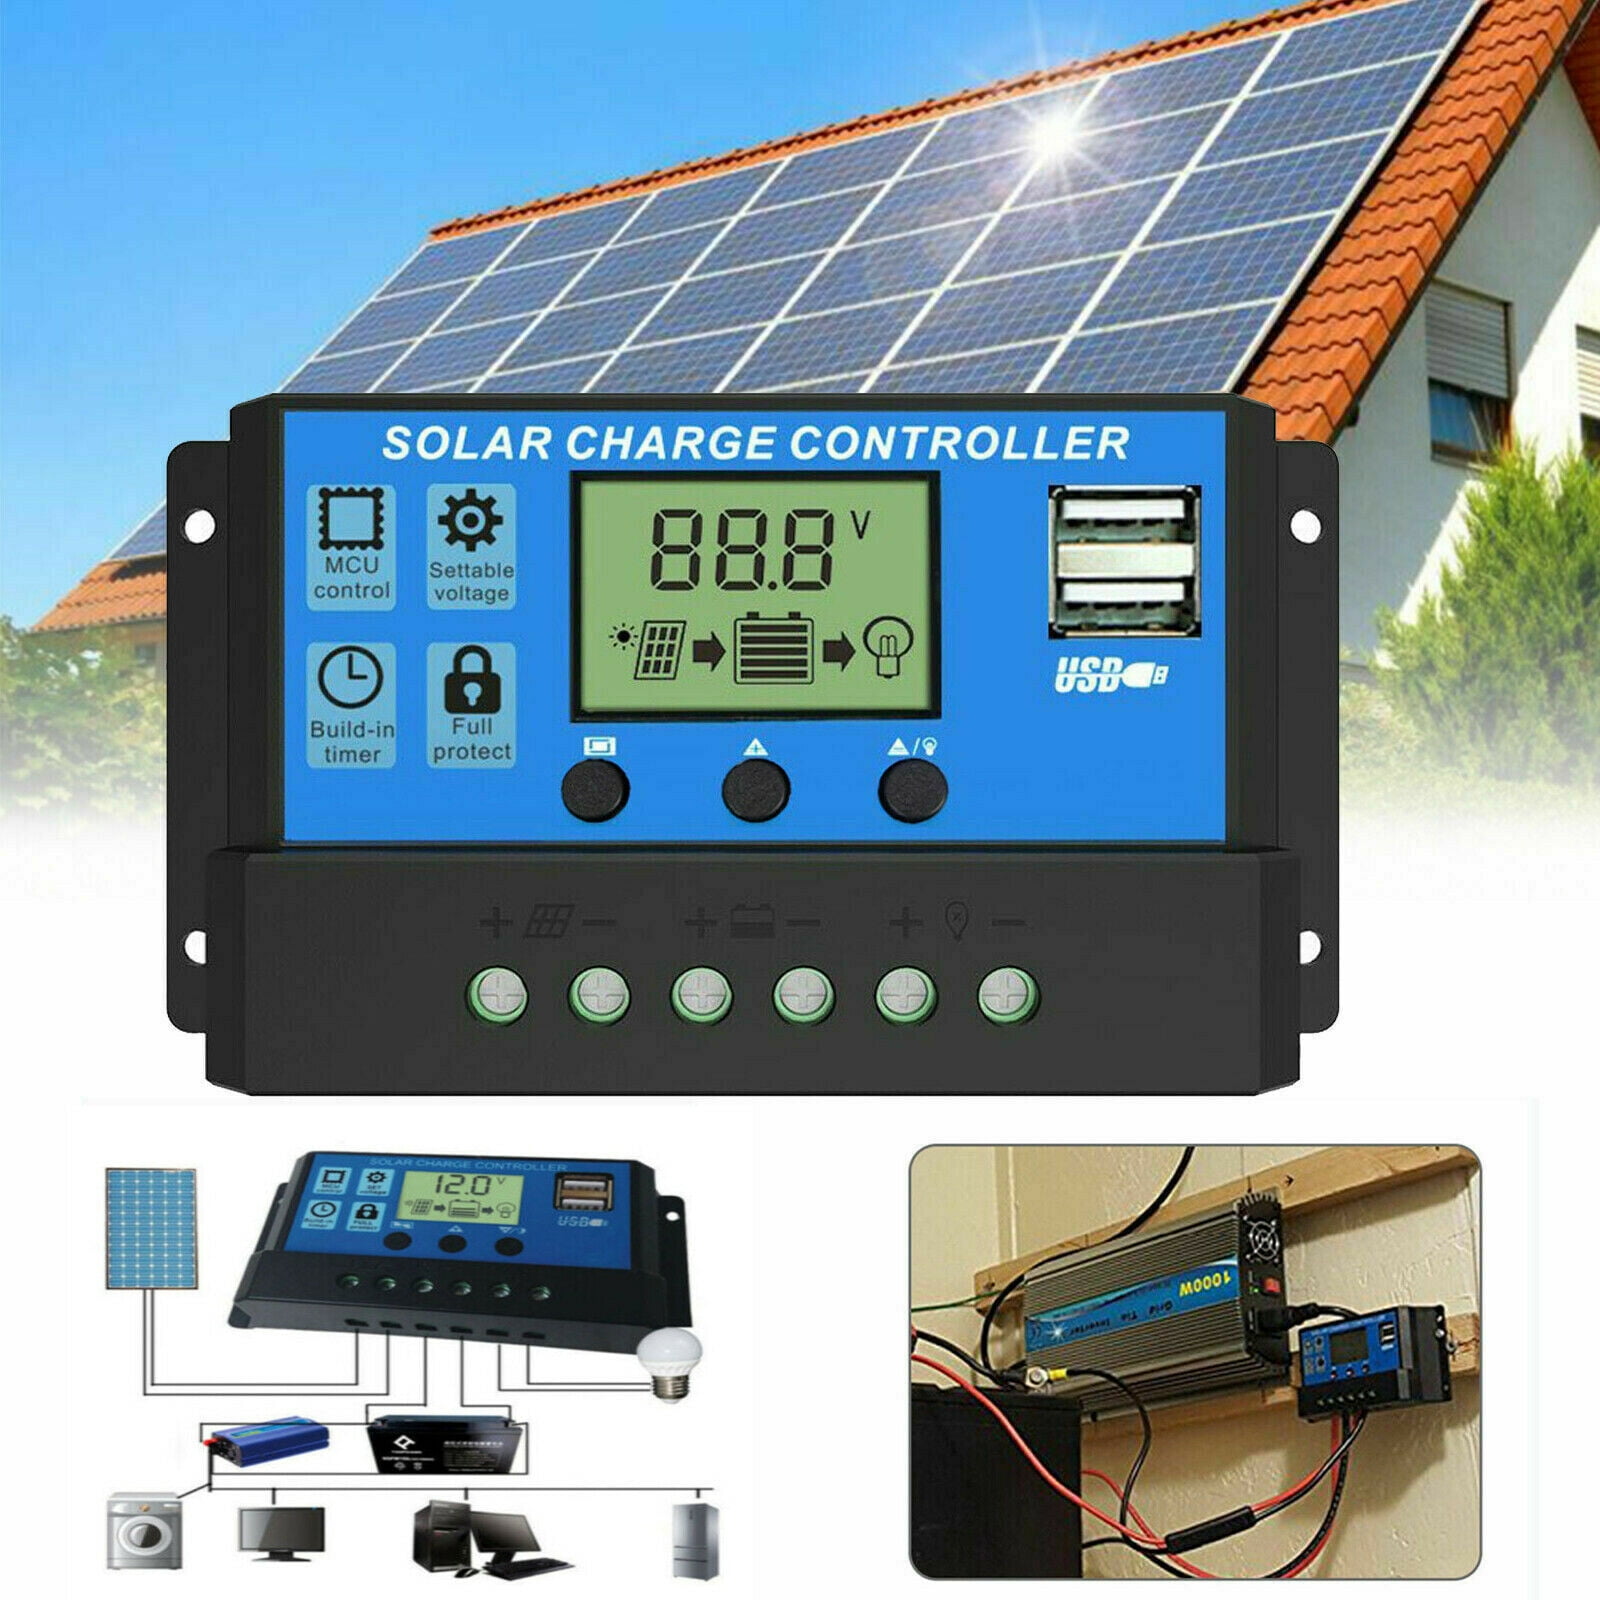 Bateria-solar-290ah-12v-249-p - Led Solar